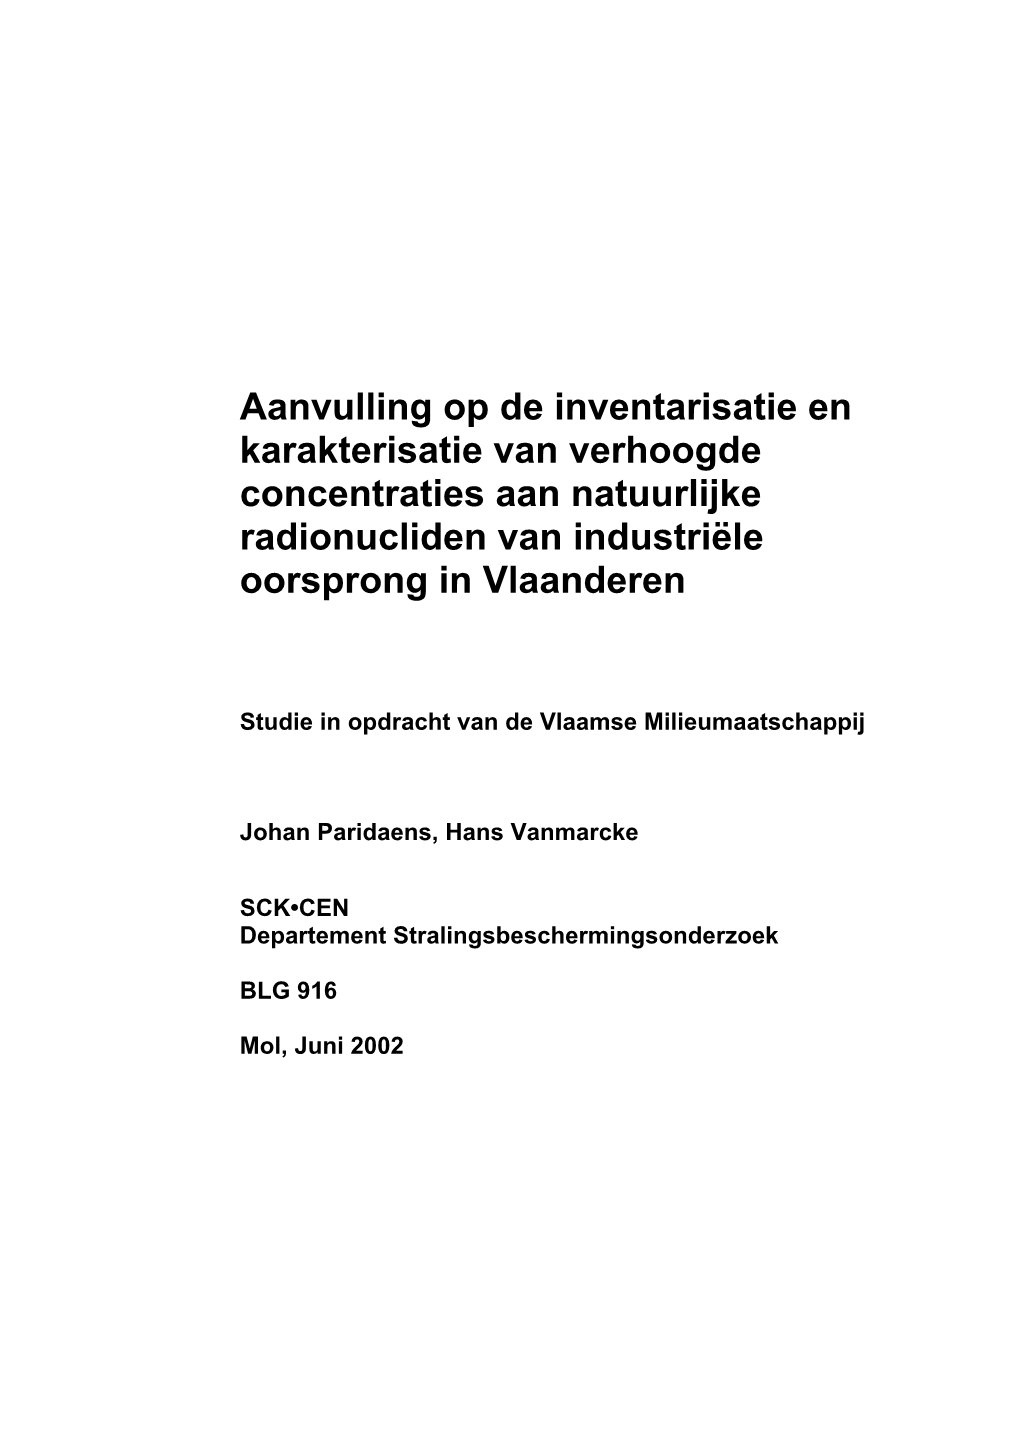 Inventarisatie En Karakterisatie Van Verhoogde Concentraties Aan Natuurlijke Radionucliden Van Industriële Oorsprong in Vlaanderen